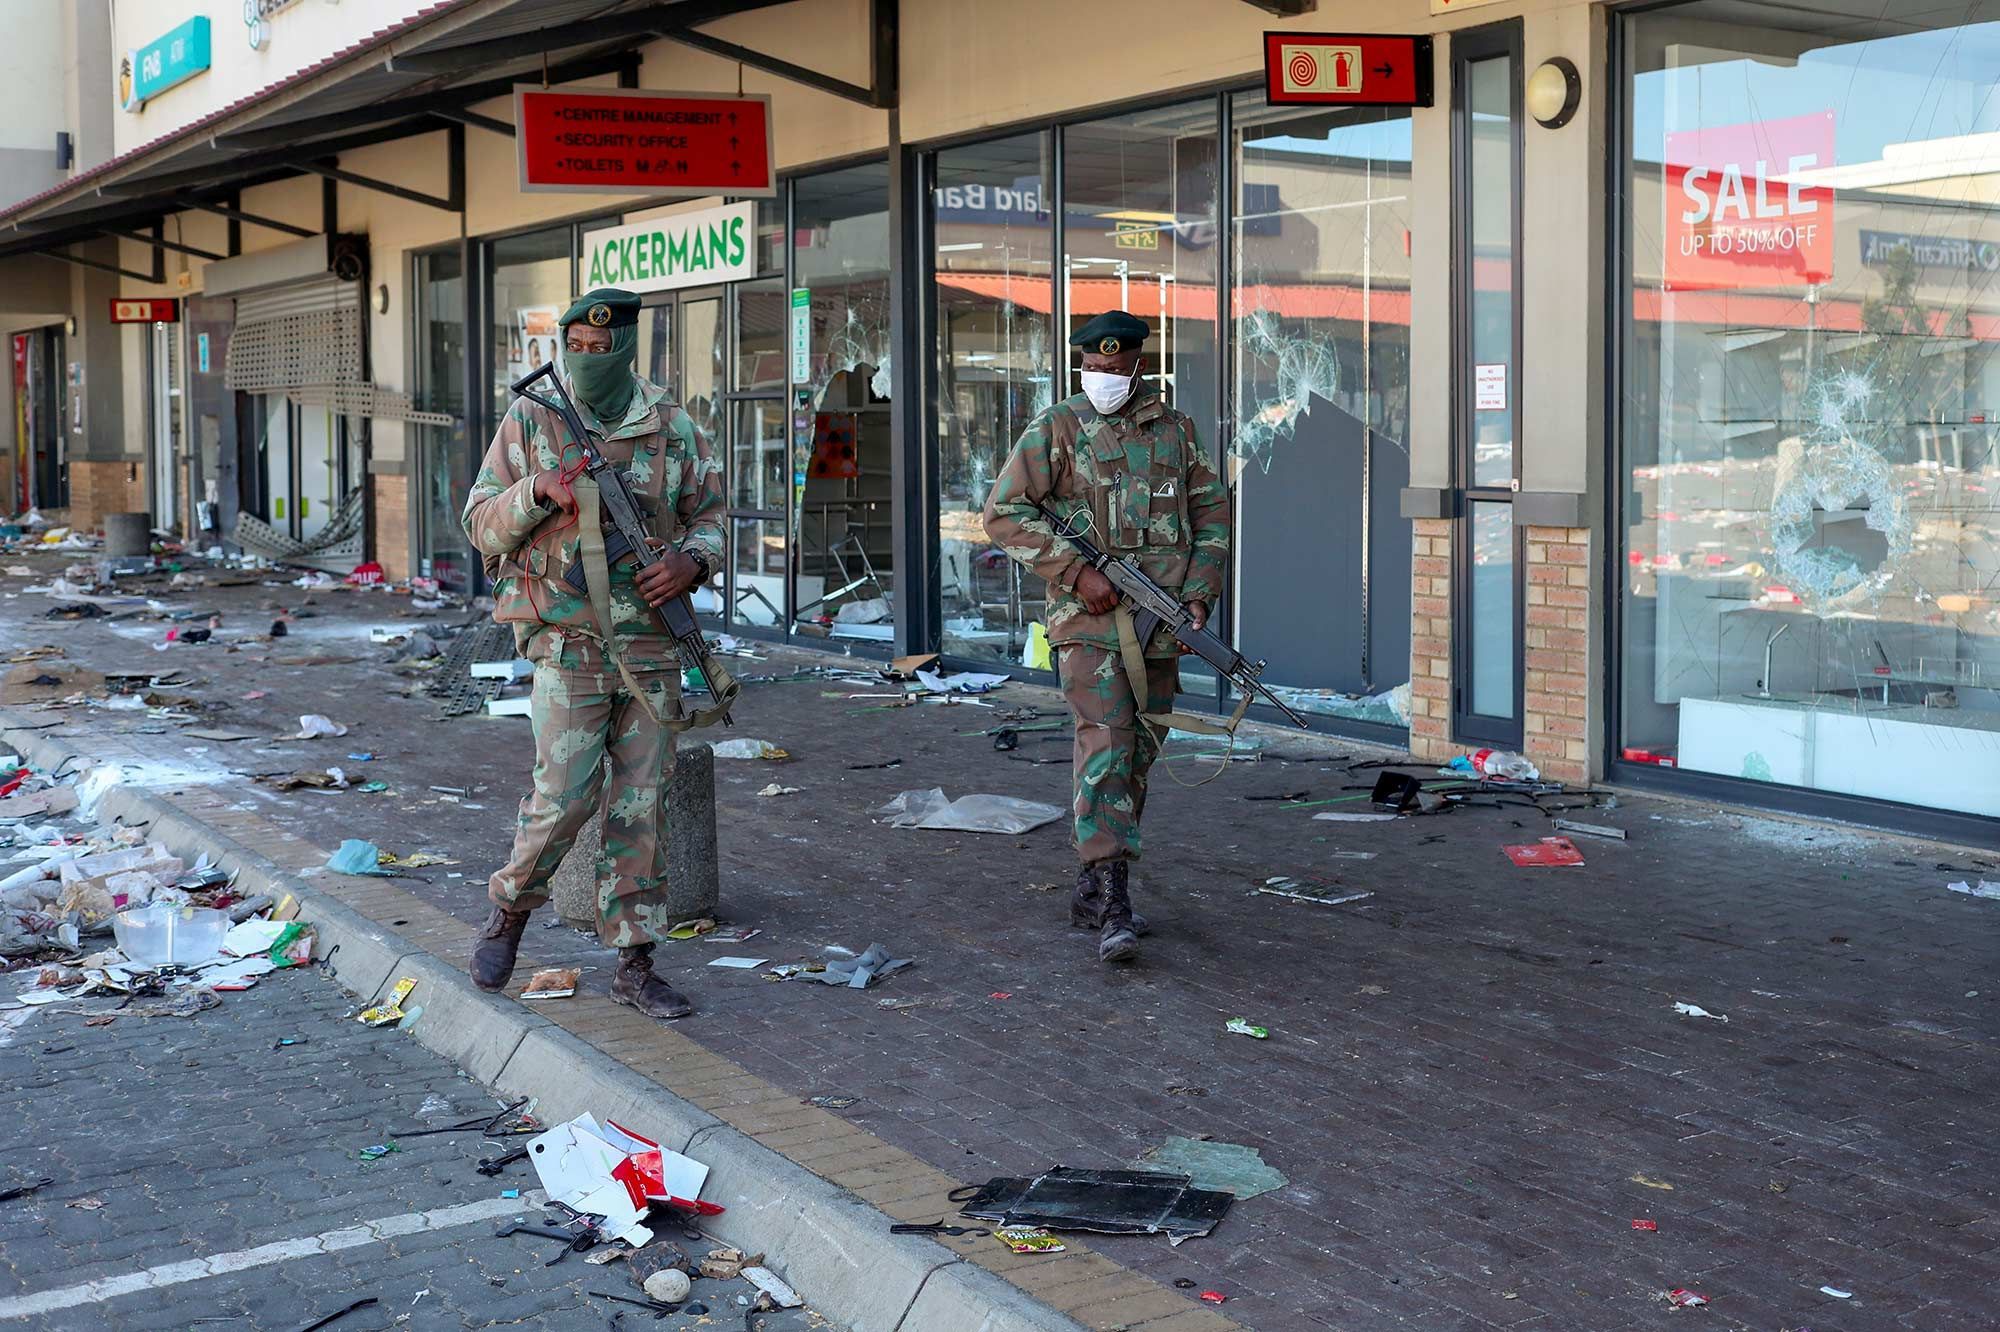 Afrique du Sud: le bilan des émeutes monte à 276 morts, selon le gouvernement